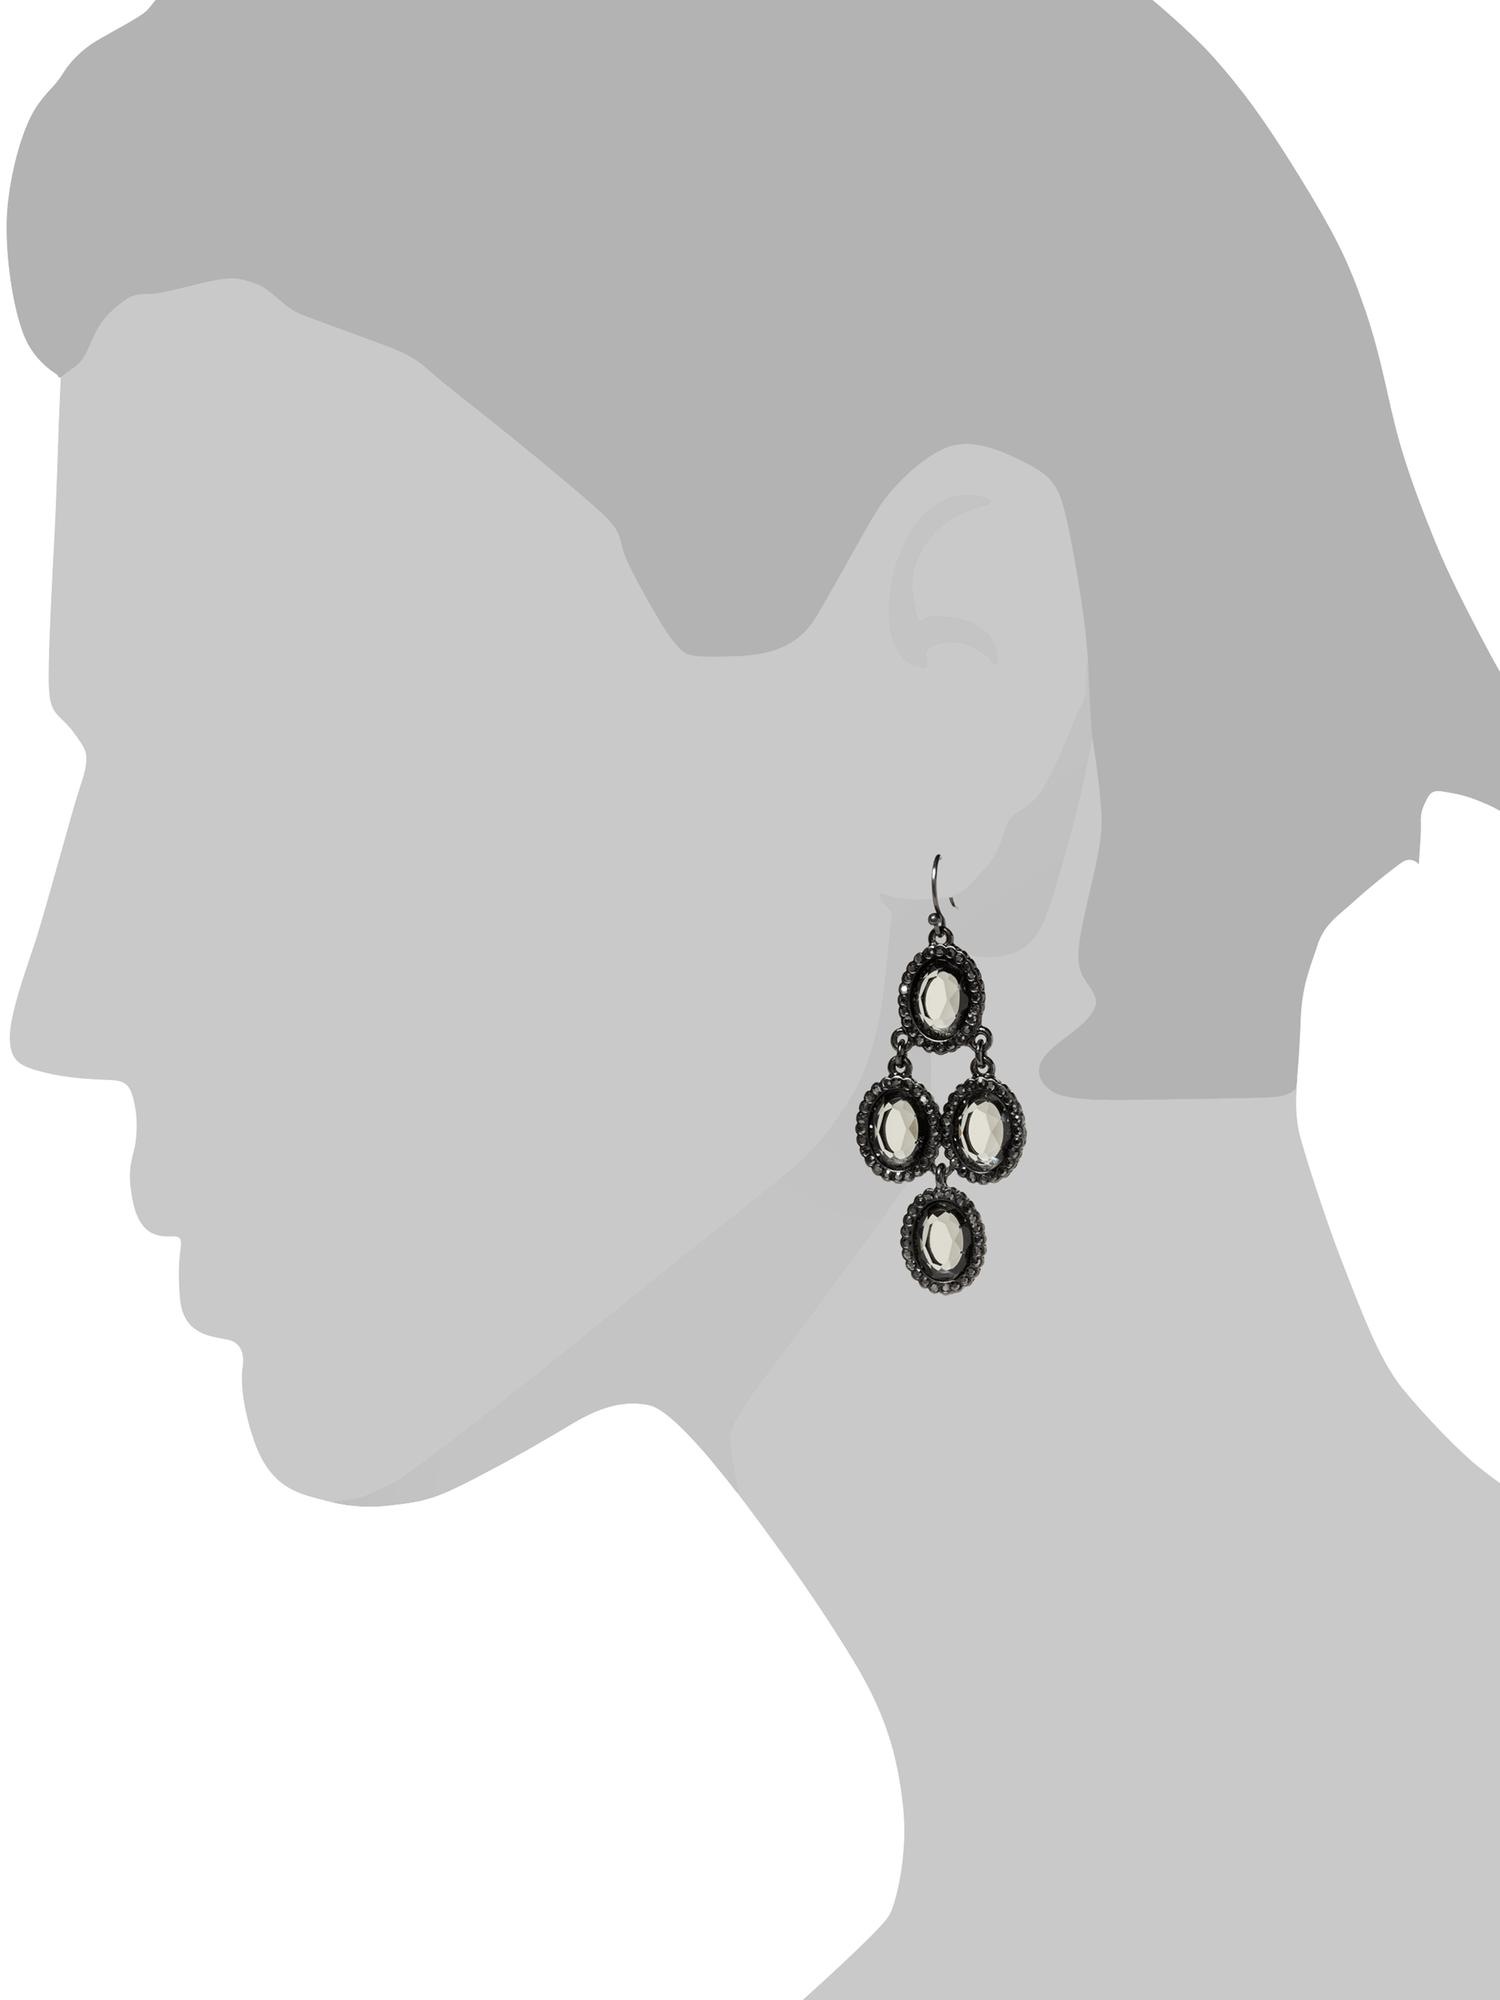 Lace chandelier earring